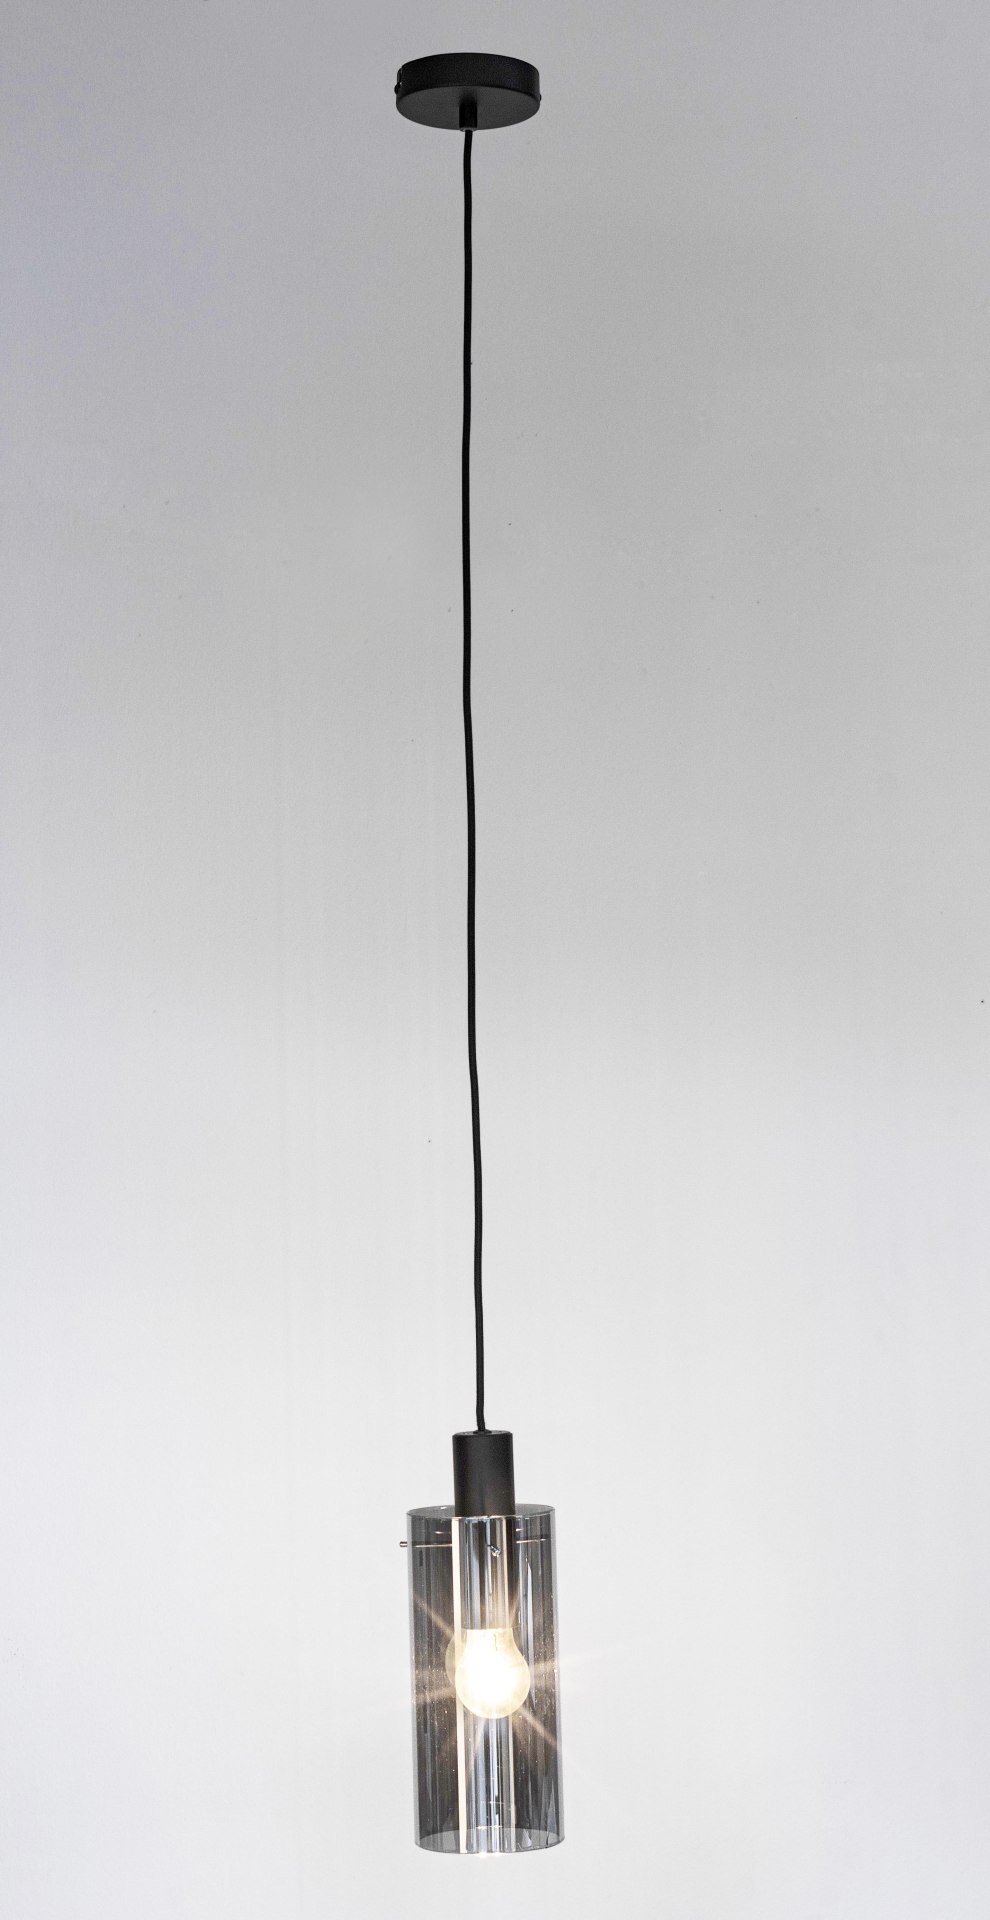 Die Hängeleuchte Aglow überzeugt mit ihrem modernen Design. Gefertigt wurde sie aus Metall, welches einen schwarzen Farbton besitzt. Der Lampenschirm ist aus Glas und ist abgedunkelt. Die Lampe besitzt eine Höhe von 130 cm.